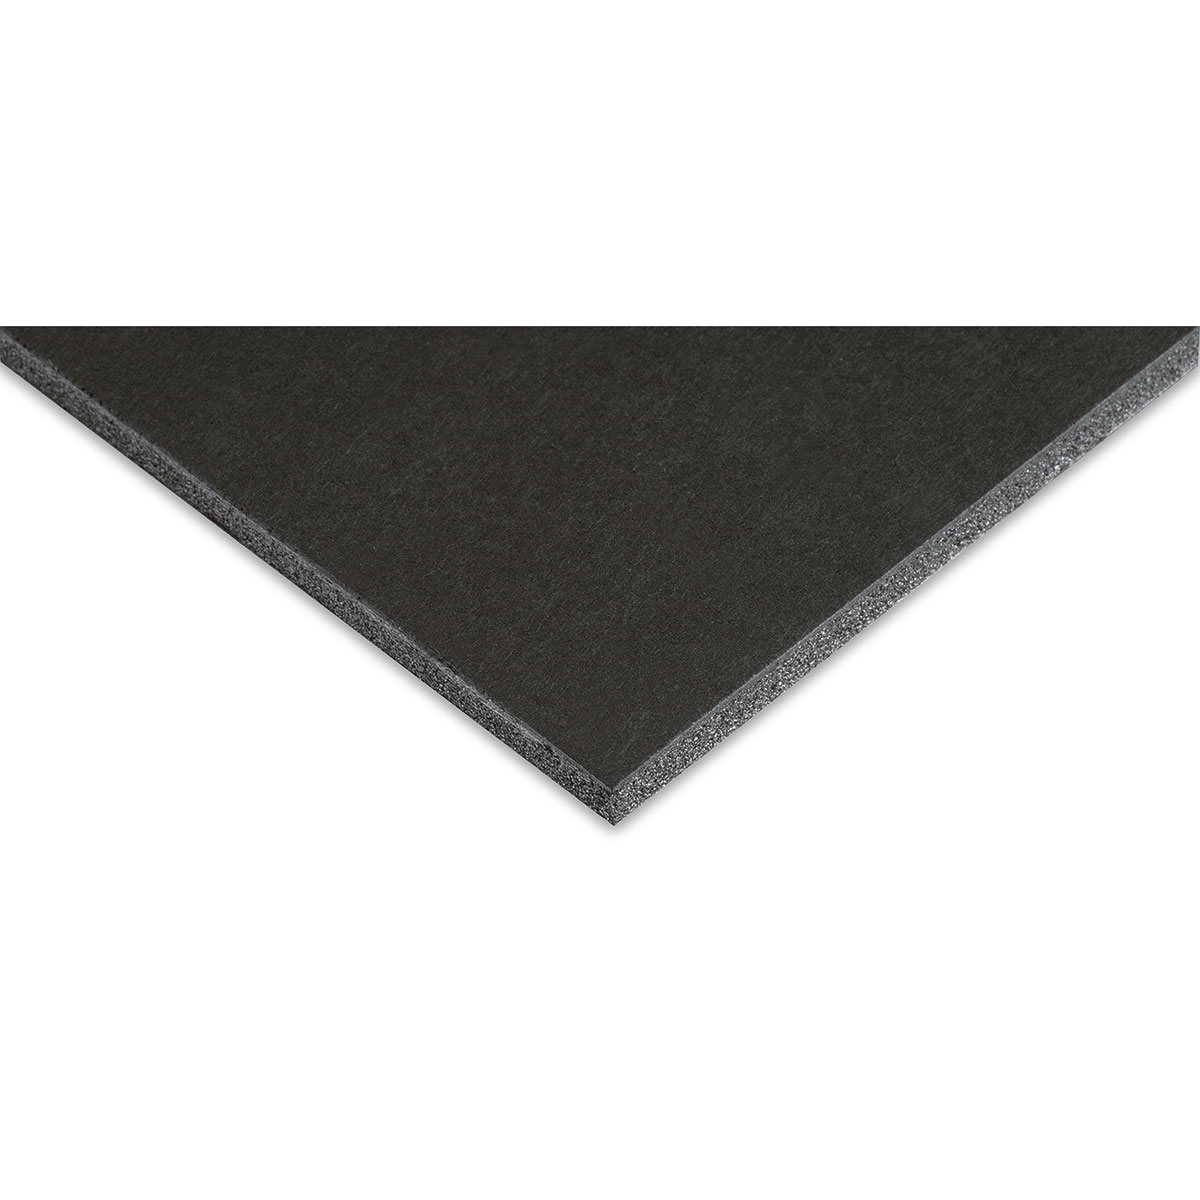 Blackcore Foam Board - 40 x 60 x 3/16, Black, Single Sheet